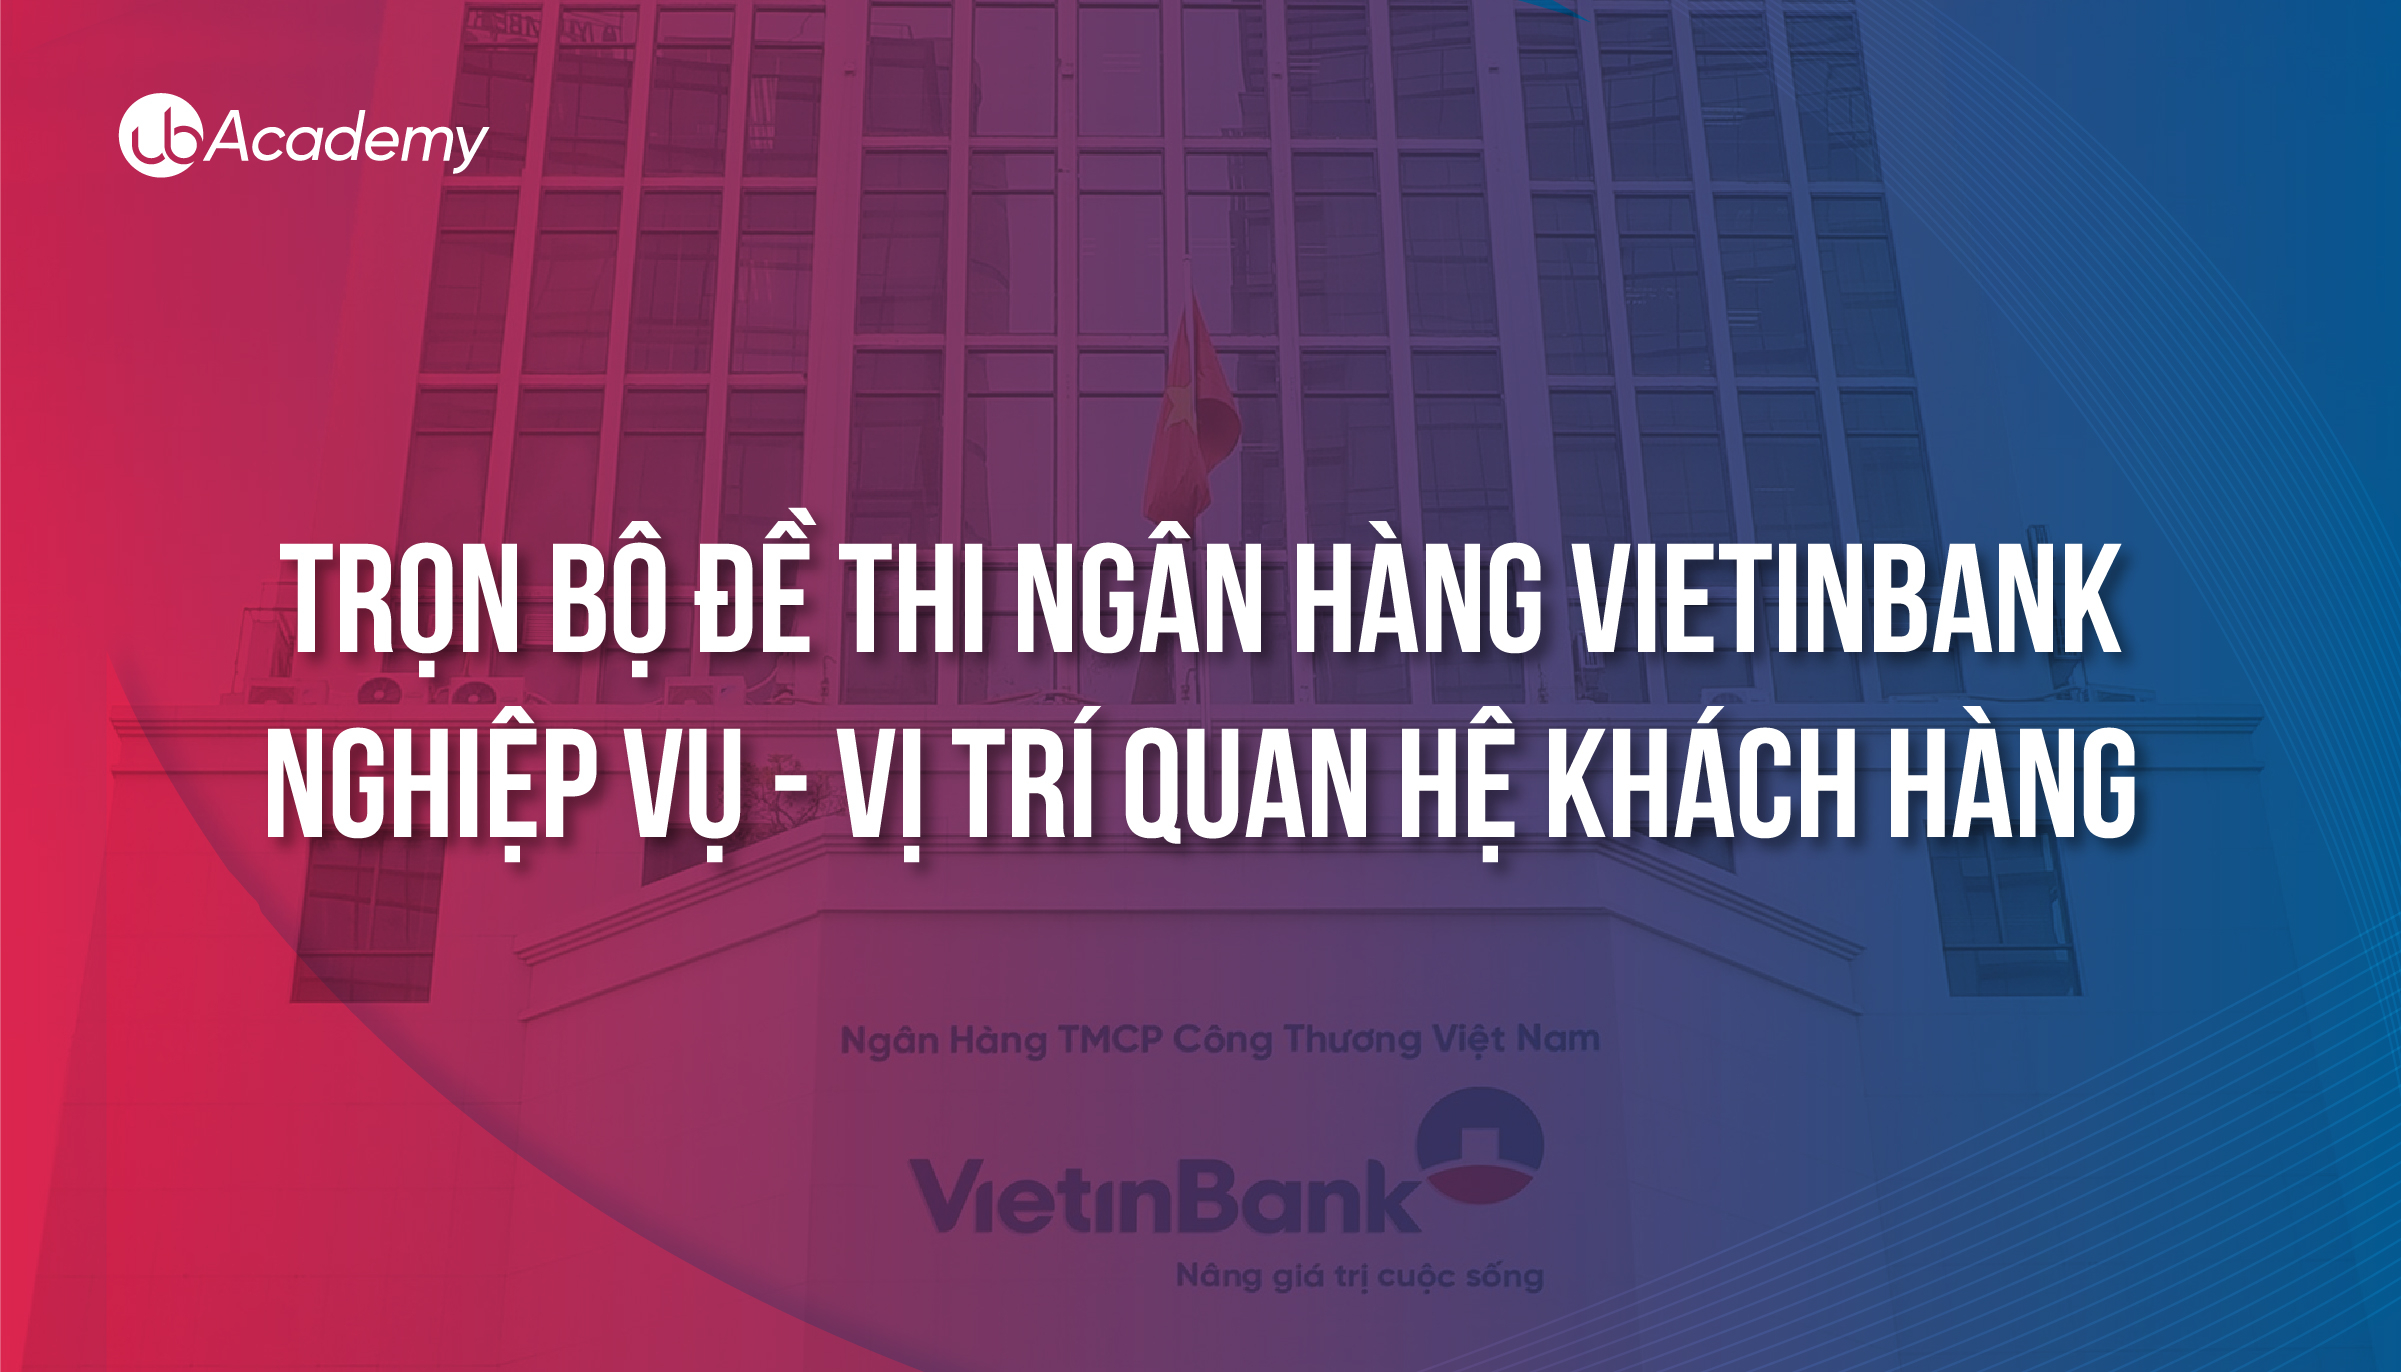 Trọn bộ đề thi Ngân hàng VietinBank  - Nghiệp vụ - Quan hệ Khách hàng